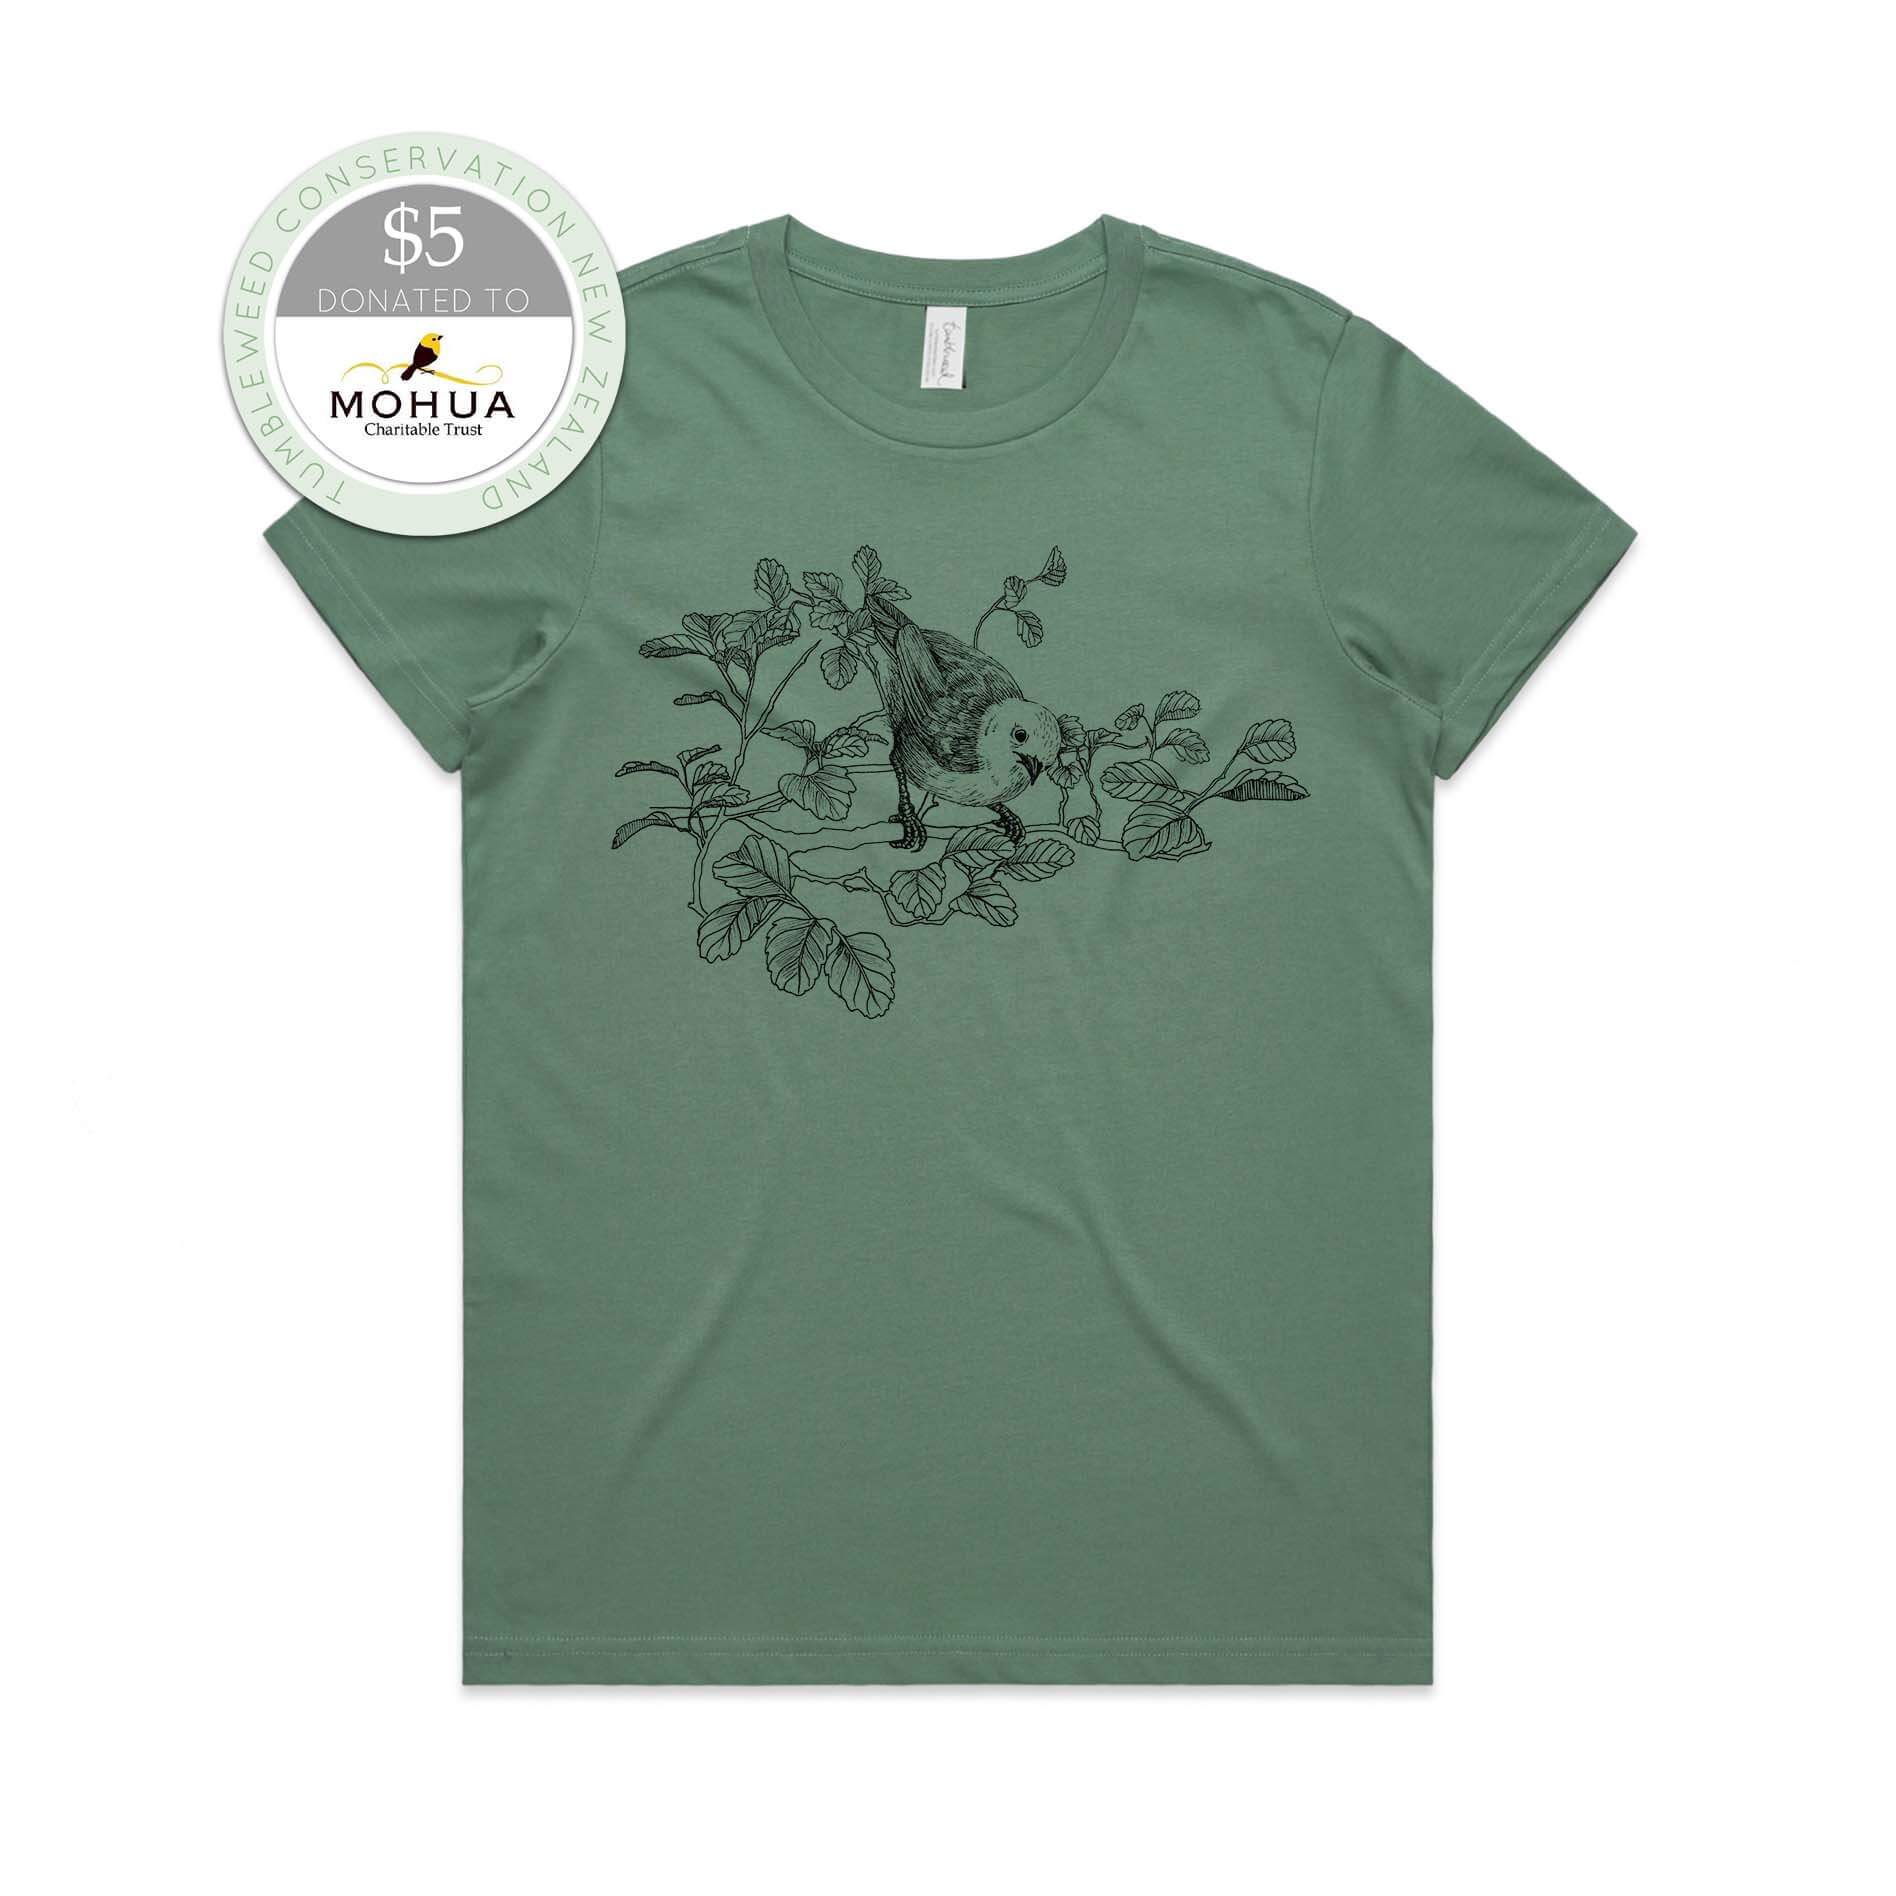 Sage, female t-shirt featuring a screen printed Mōhua/Yellowhead design.